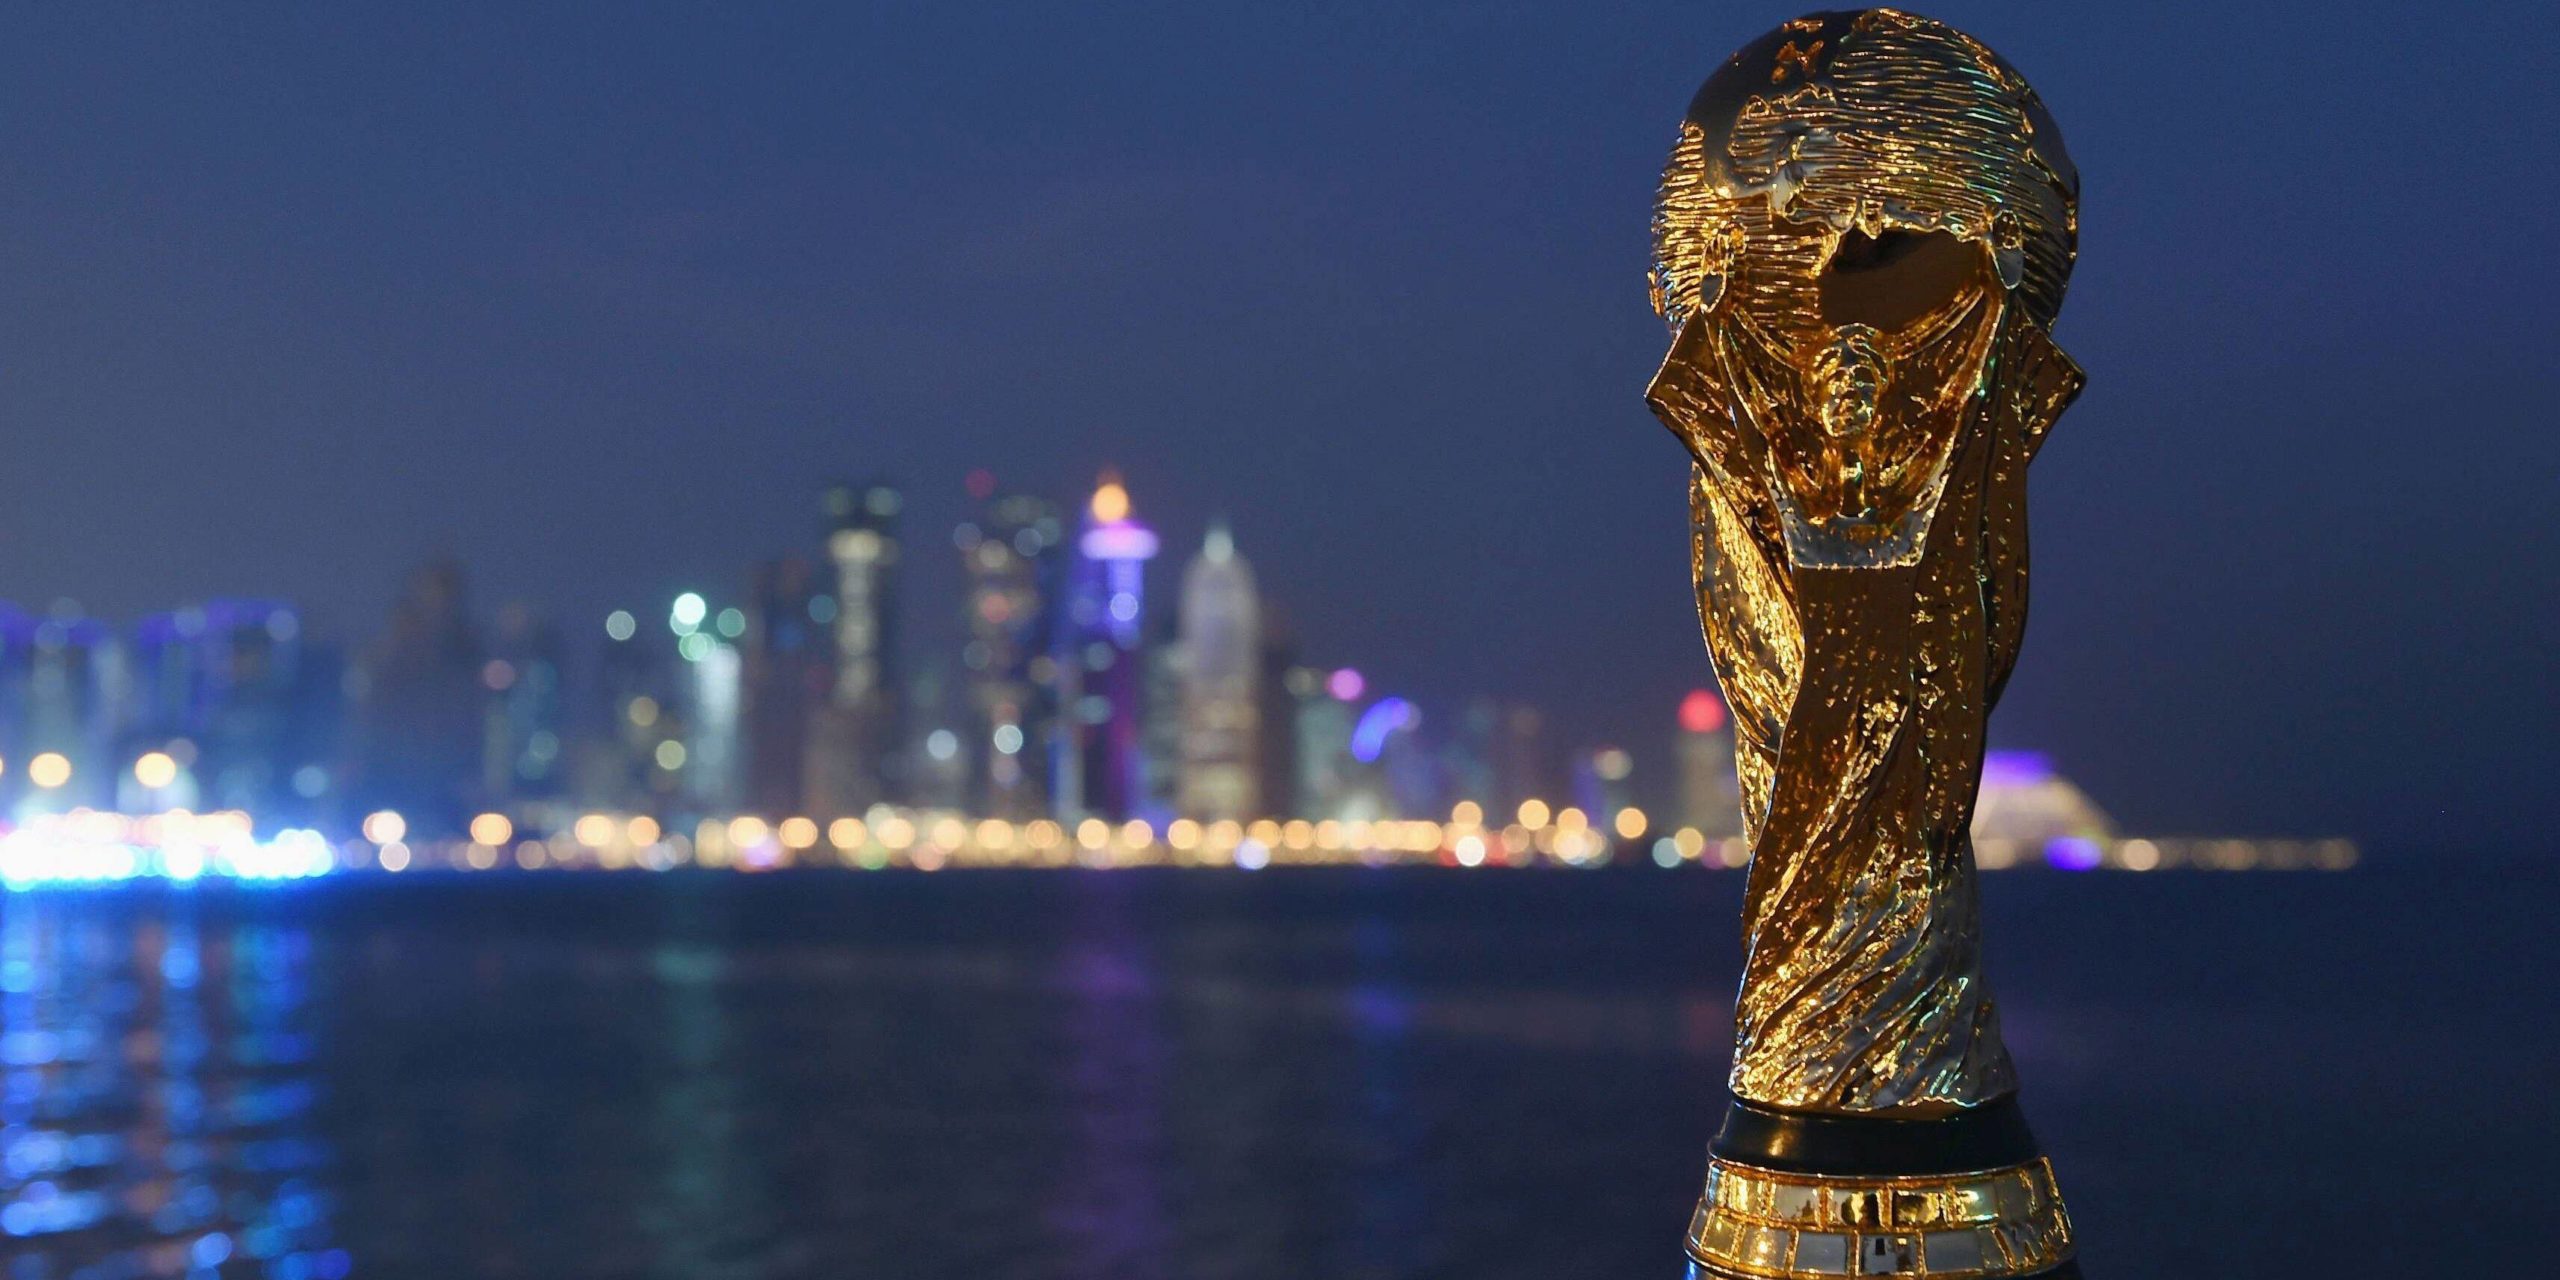 La Coupe du monde 2022 se jouera officiellement en novembre / décembre